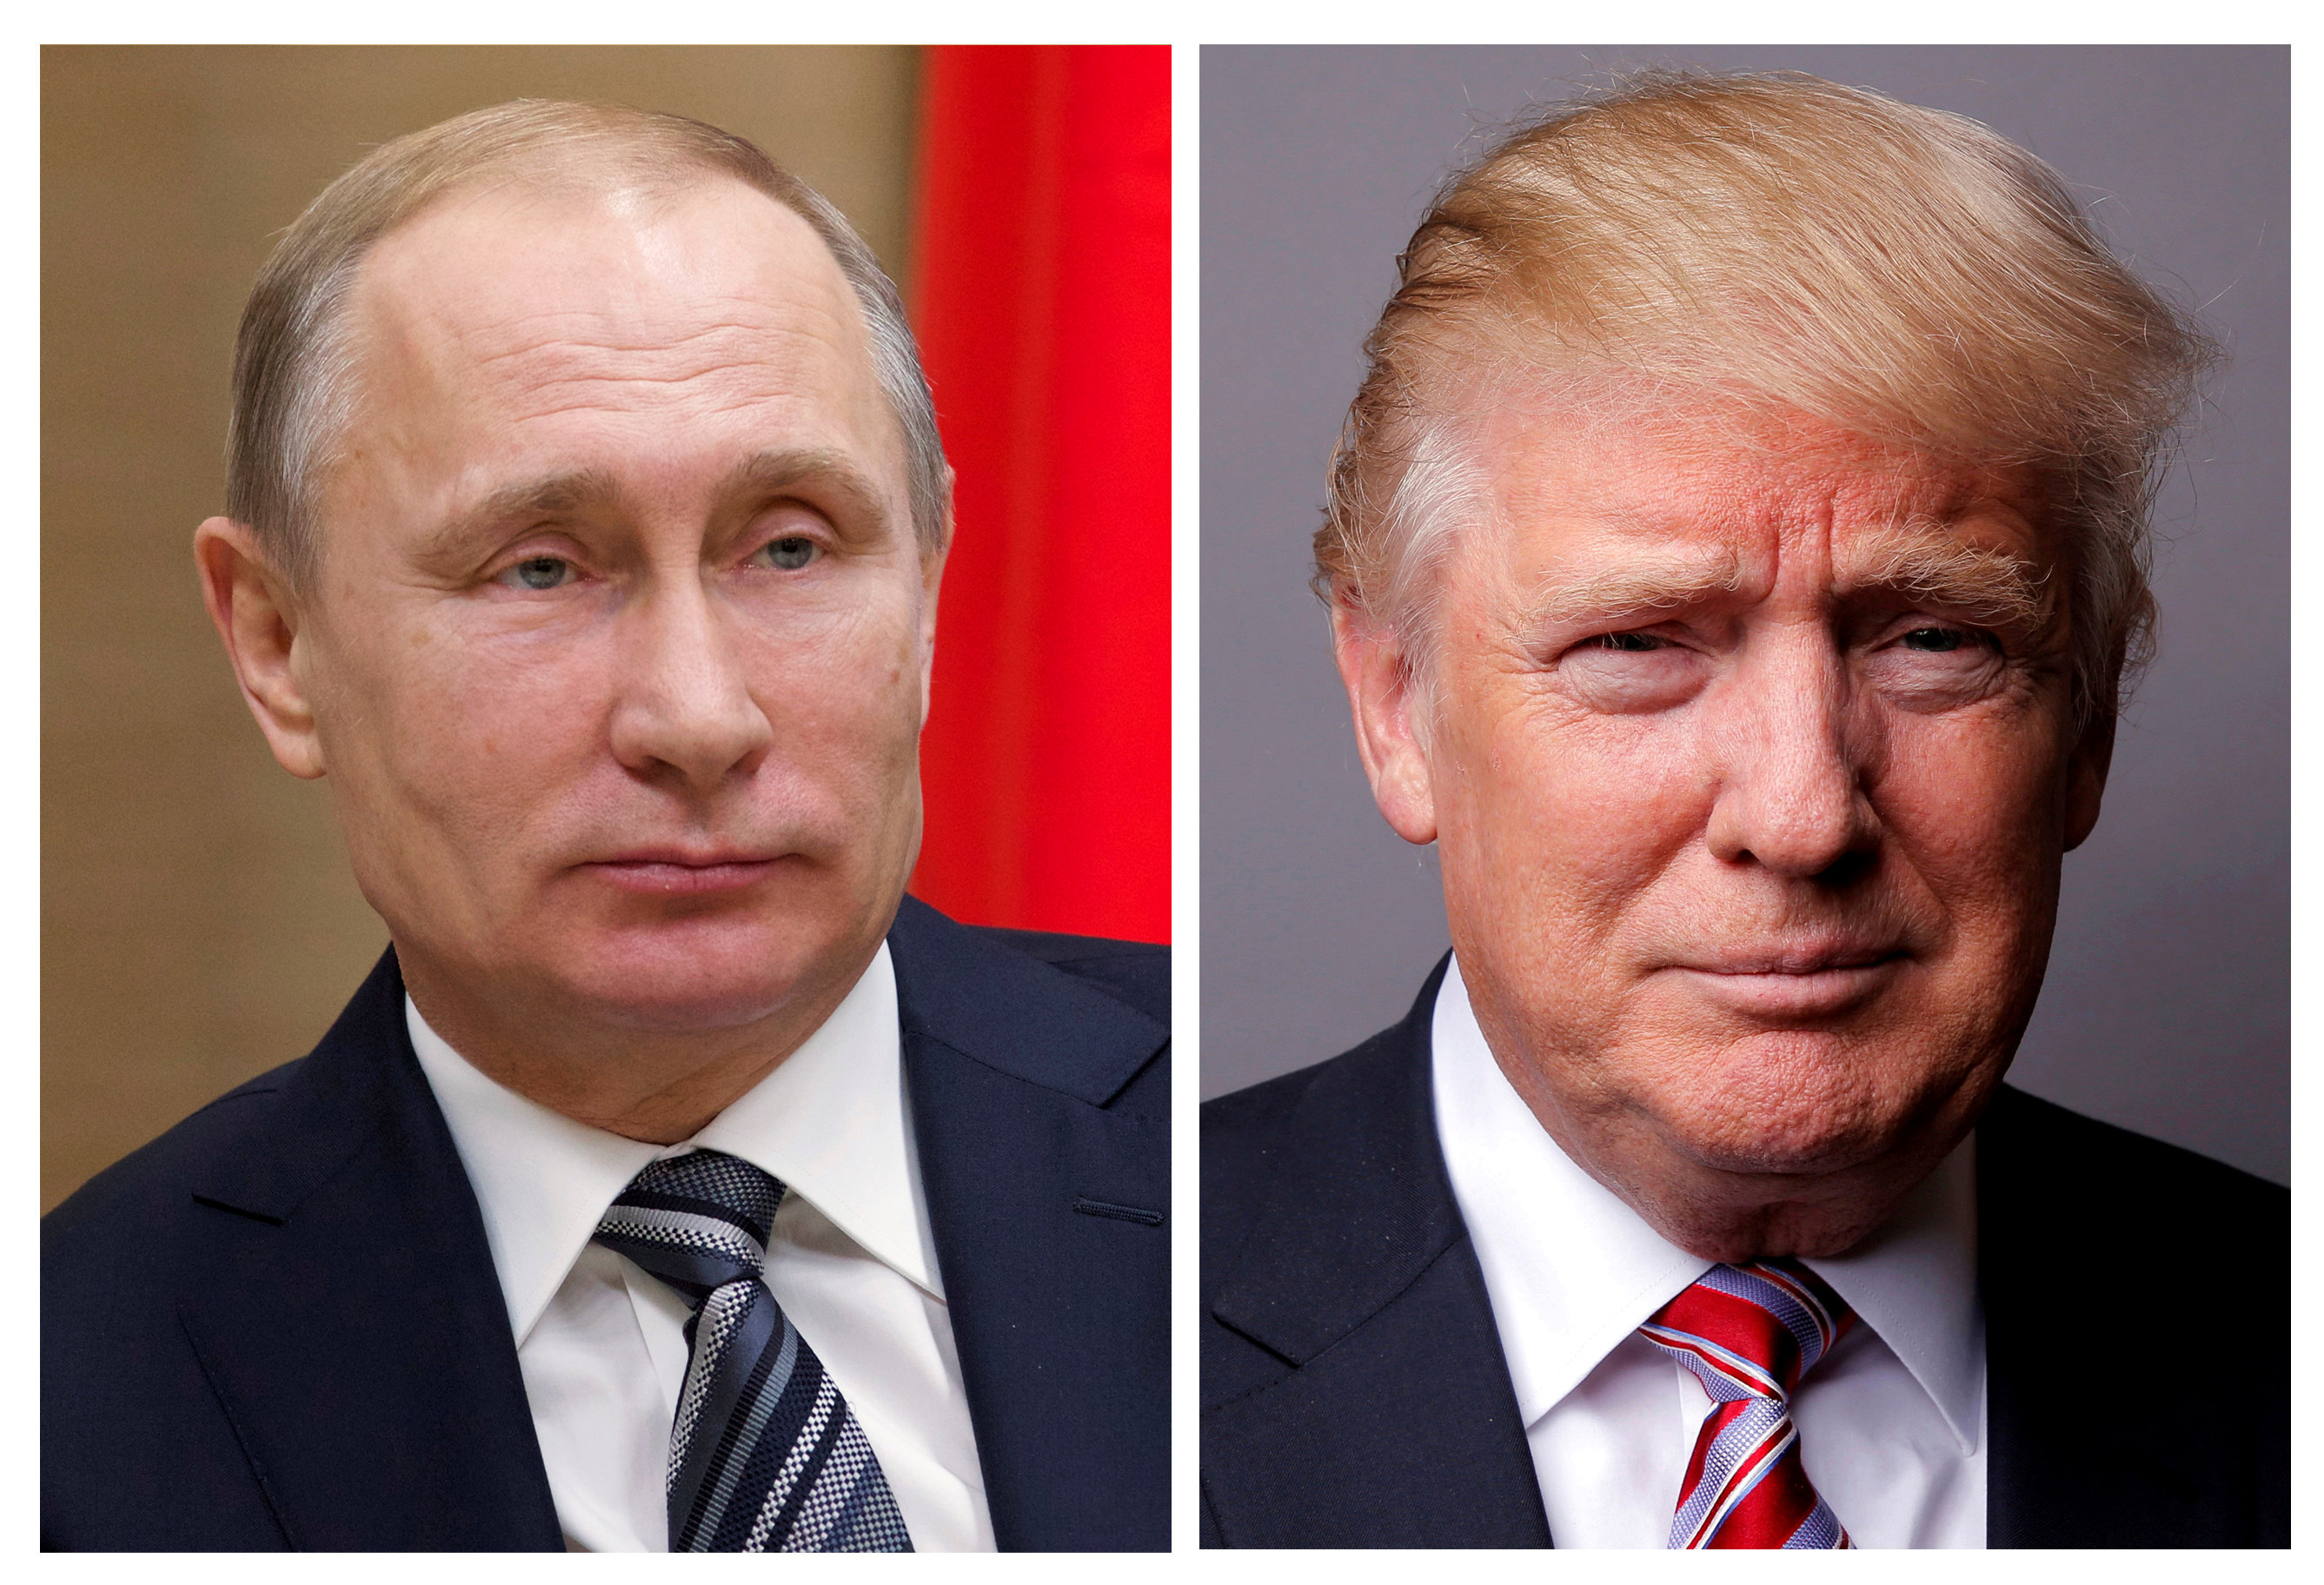 Ρωσία: Δεν υπάρχει συμφωνία για συνάντηση Πούτιν - Τραμπ στη σύνοδο της G20